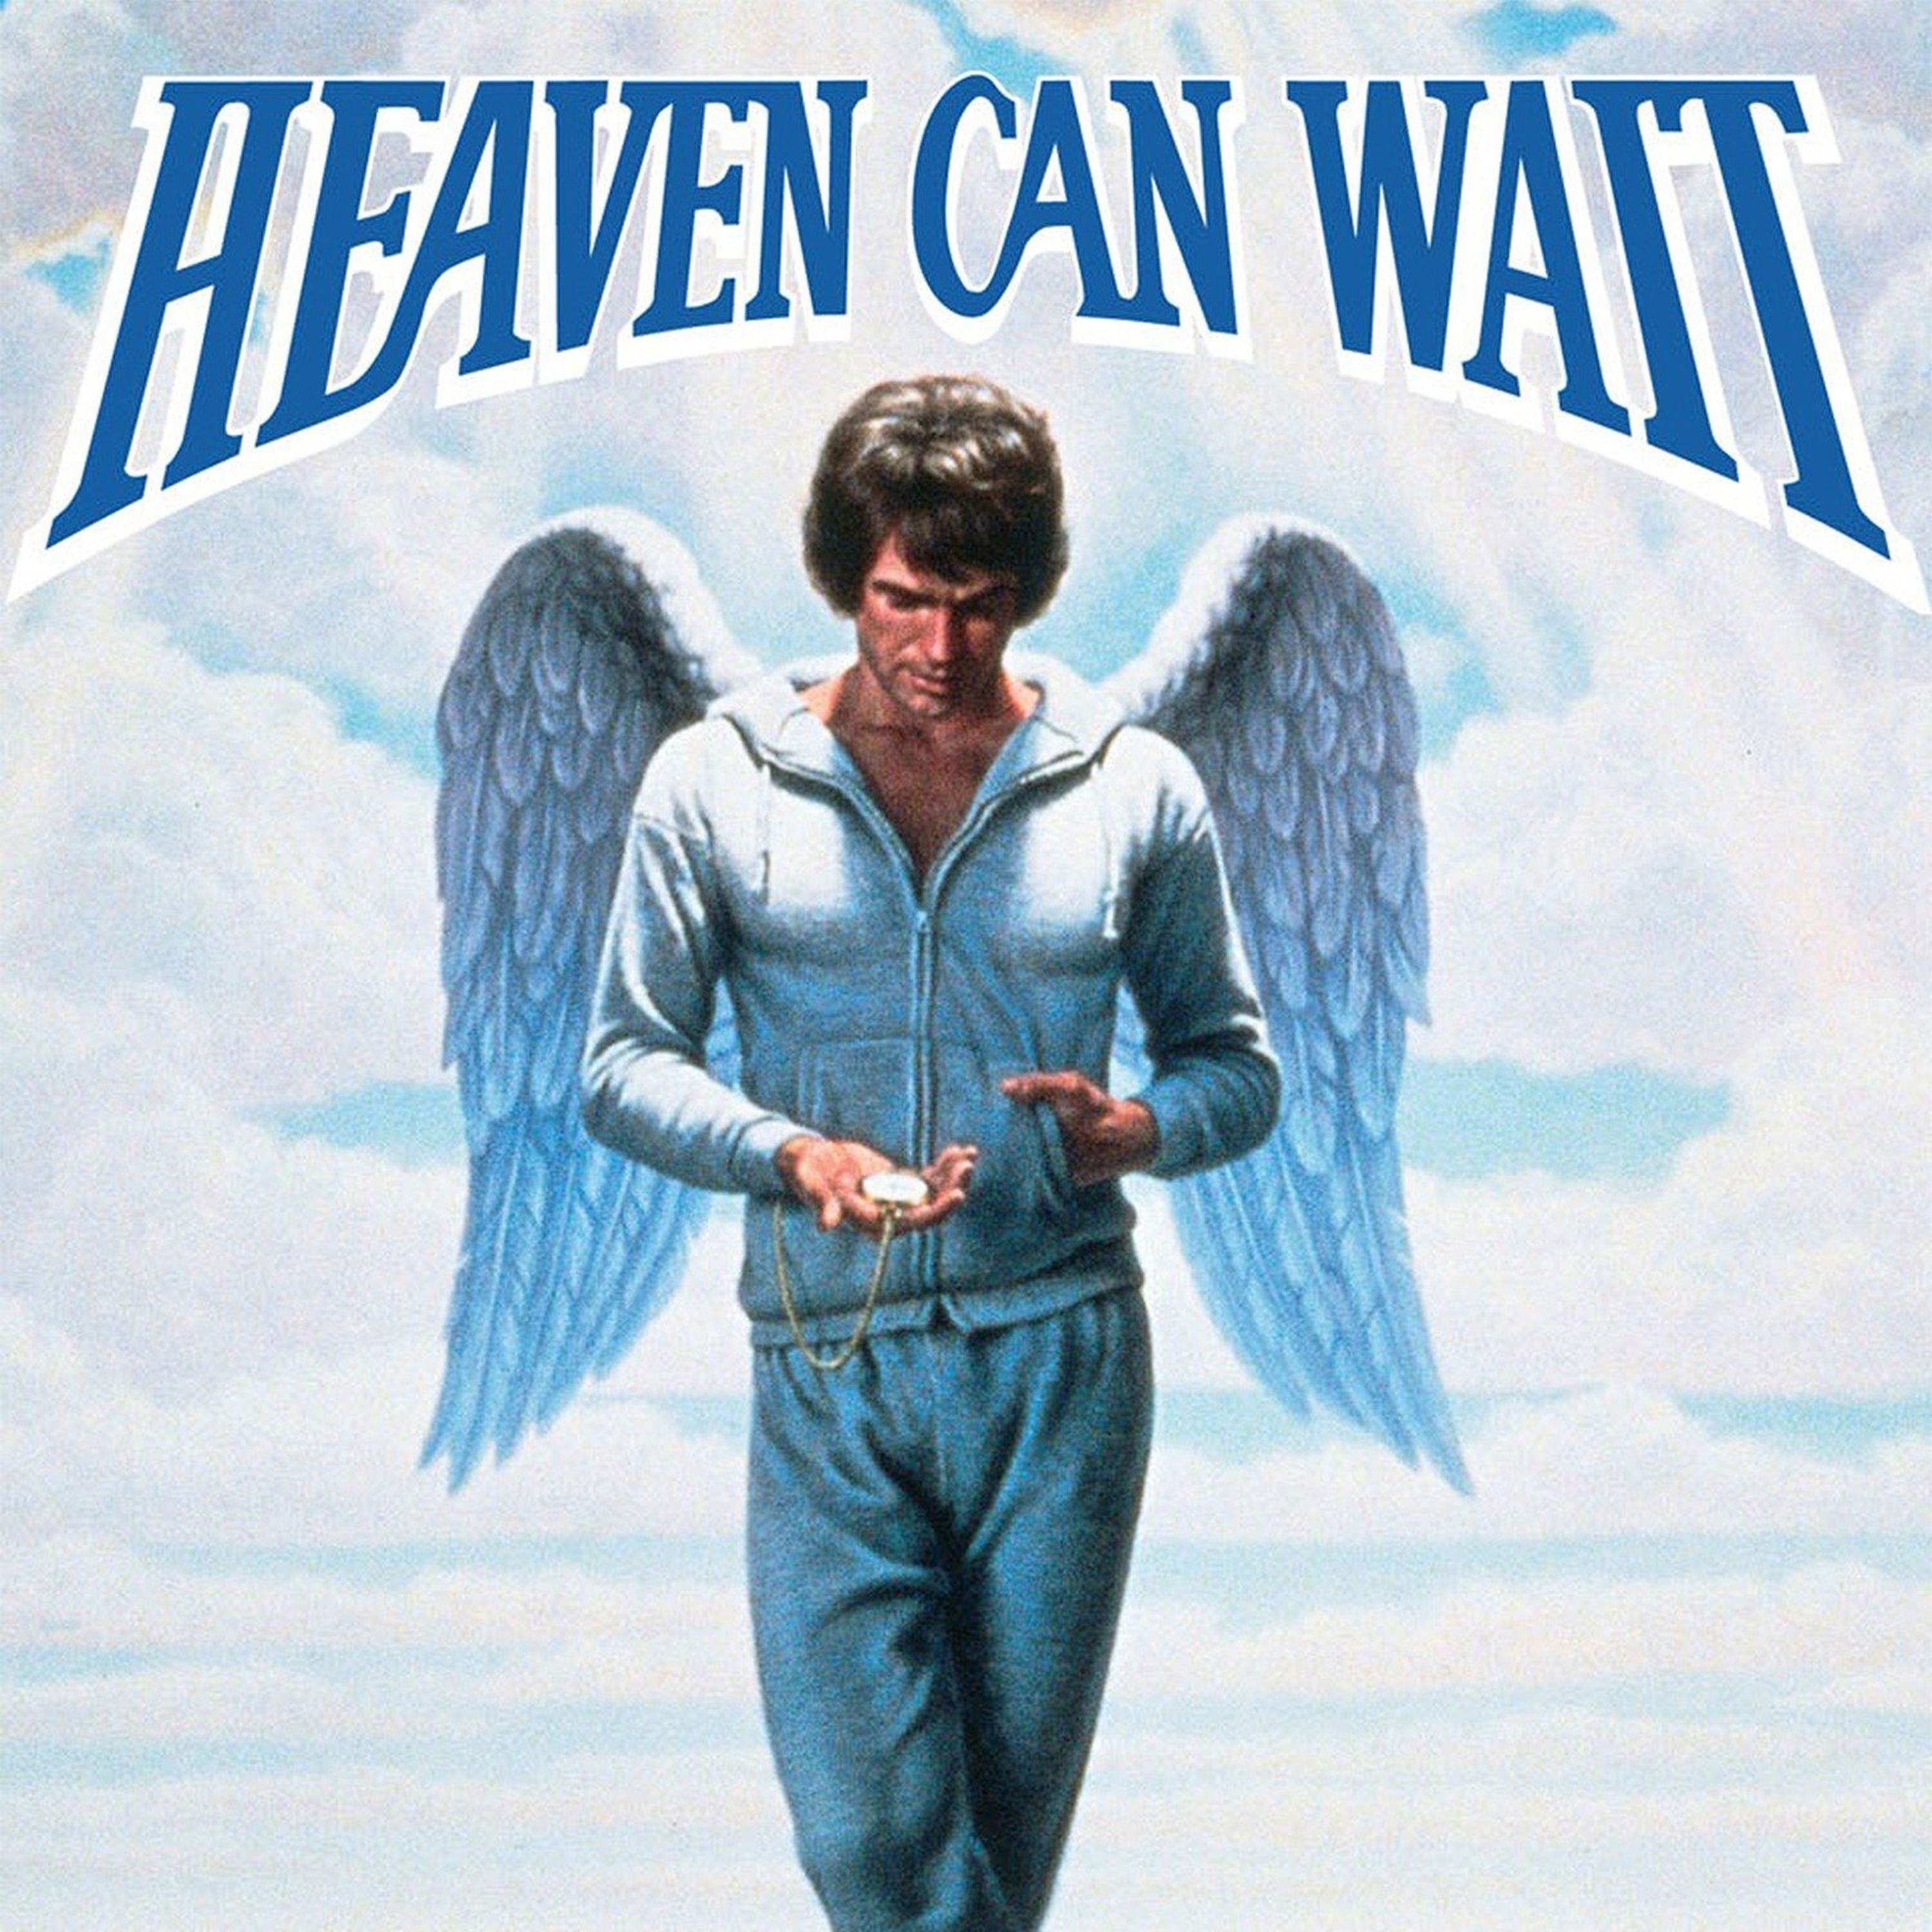 Heaven Can Wait (1974)